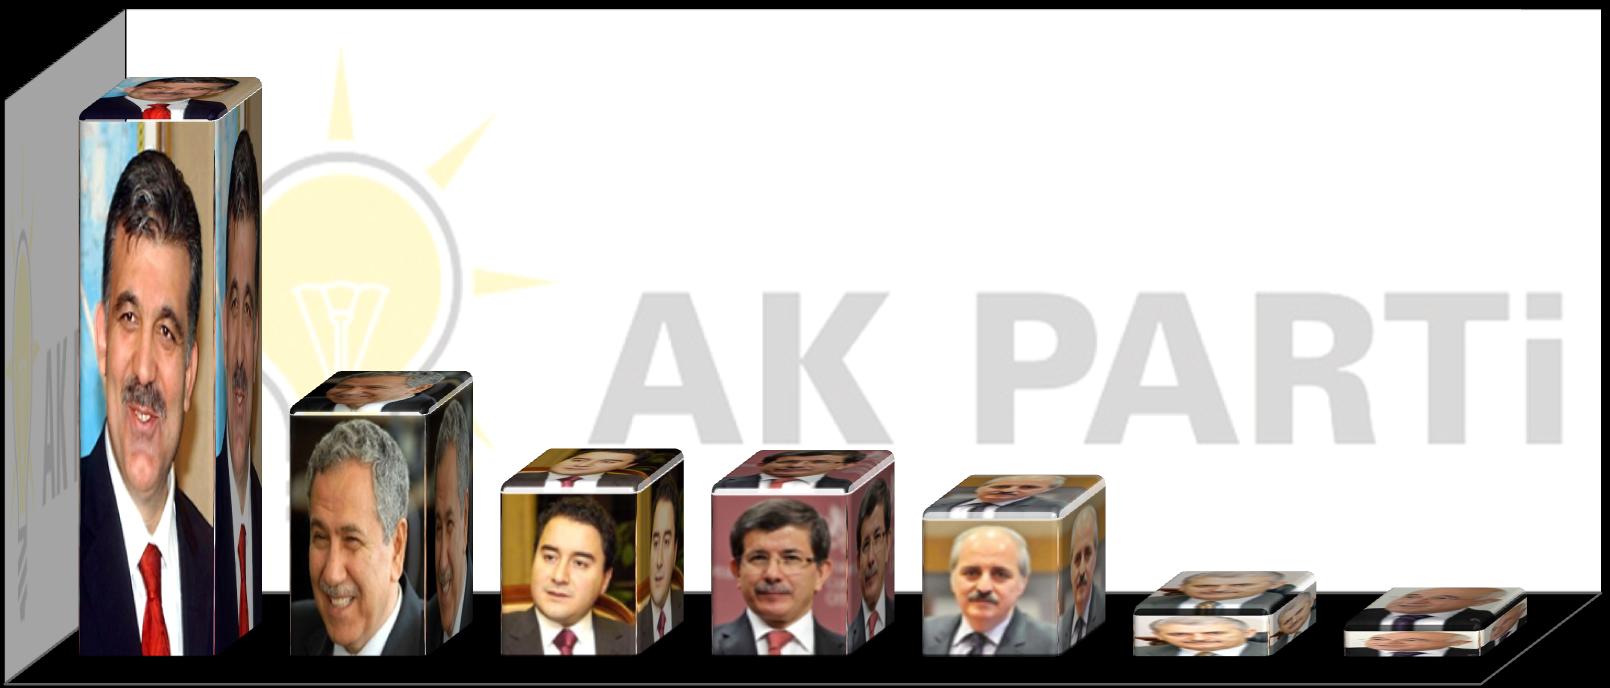 Kişi ismi belirtmemiş olanlar eşit ağırlıklı dağıtıldığında, eğer Erdoğan Cumhurbaşkanı olursa %37 lik bir kitle Abdullah Gül ü AK Parti nin Genel Başkanı olarak görmek istediğini belirtmiştir.